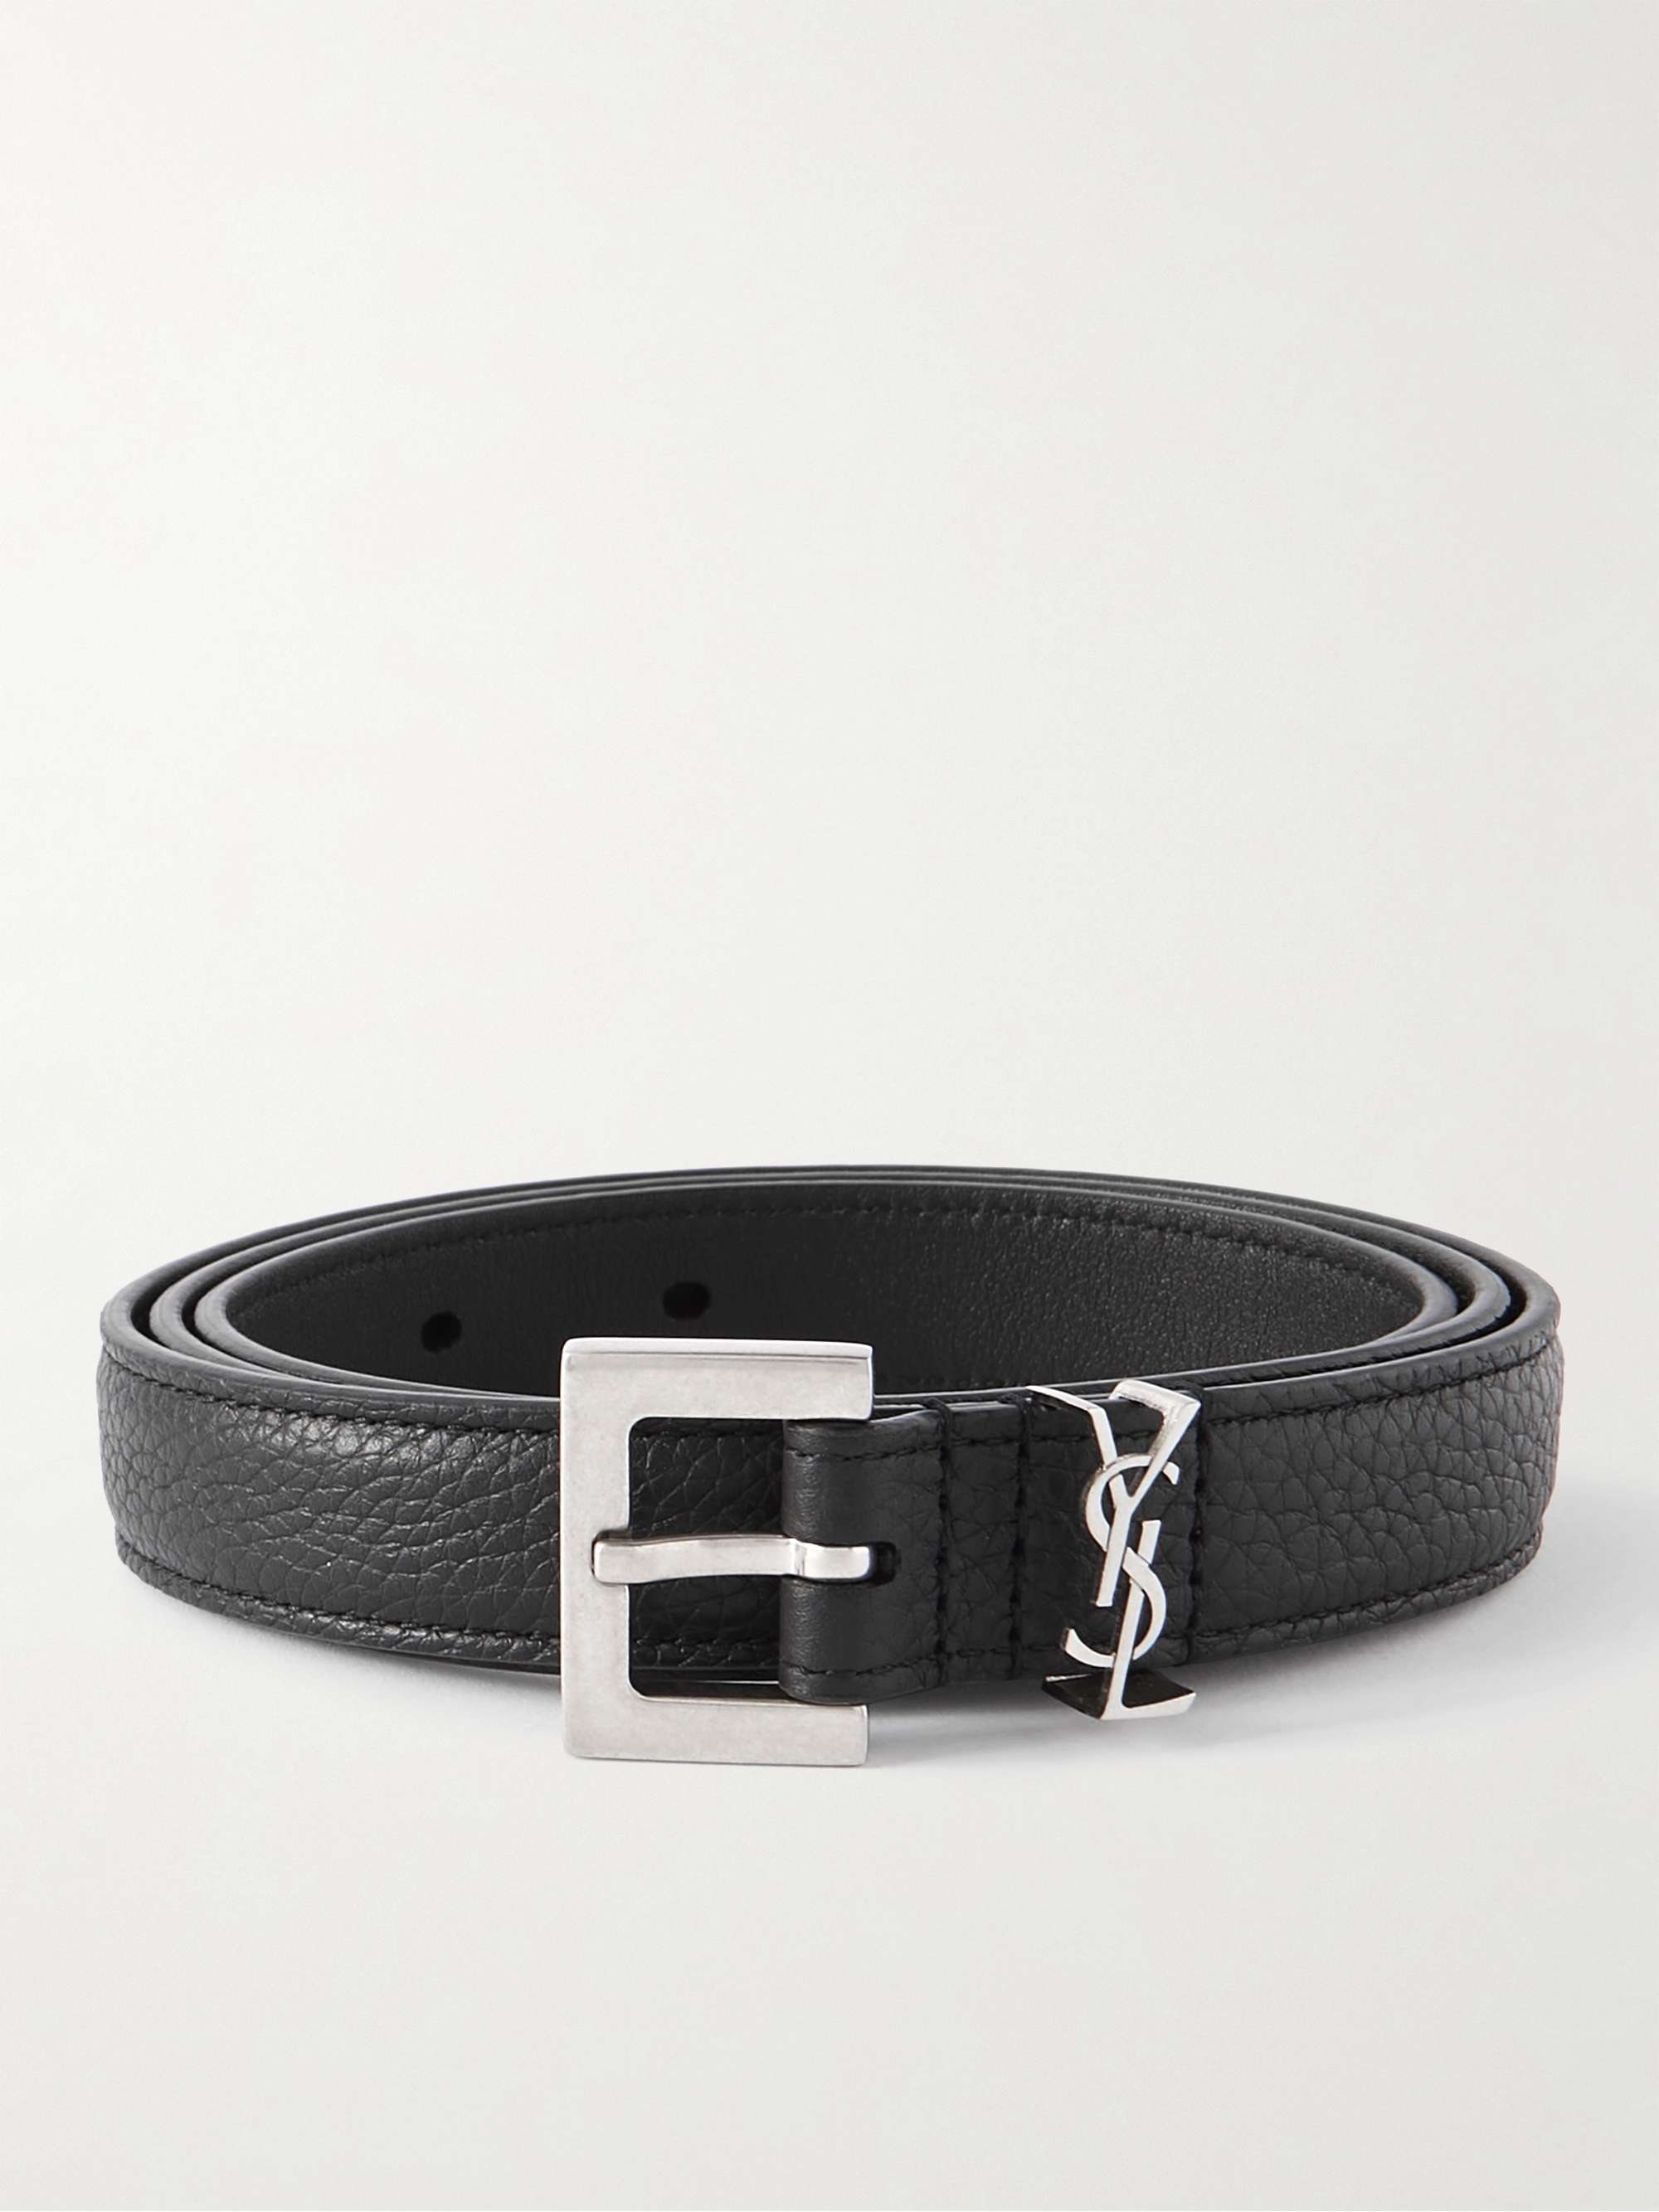 2cm ysl buckle leather belt - Saint Laurent - Men